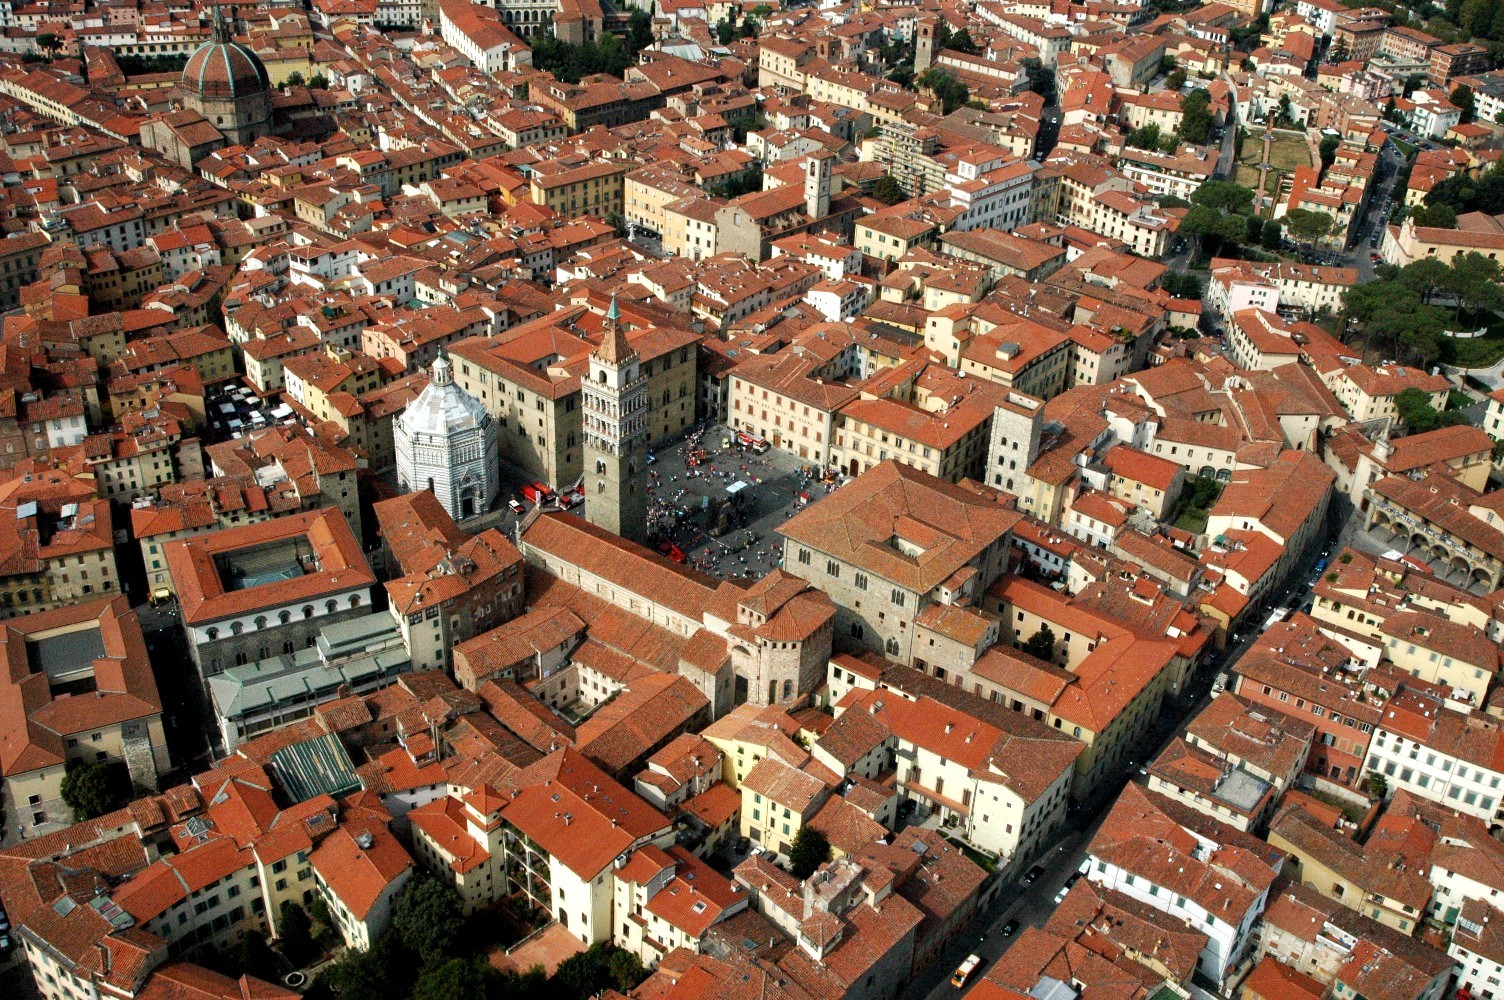 Centro storico Pistoia dall'alto (foto da comunicato)